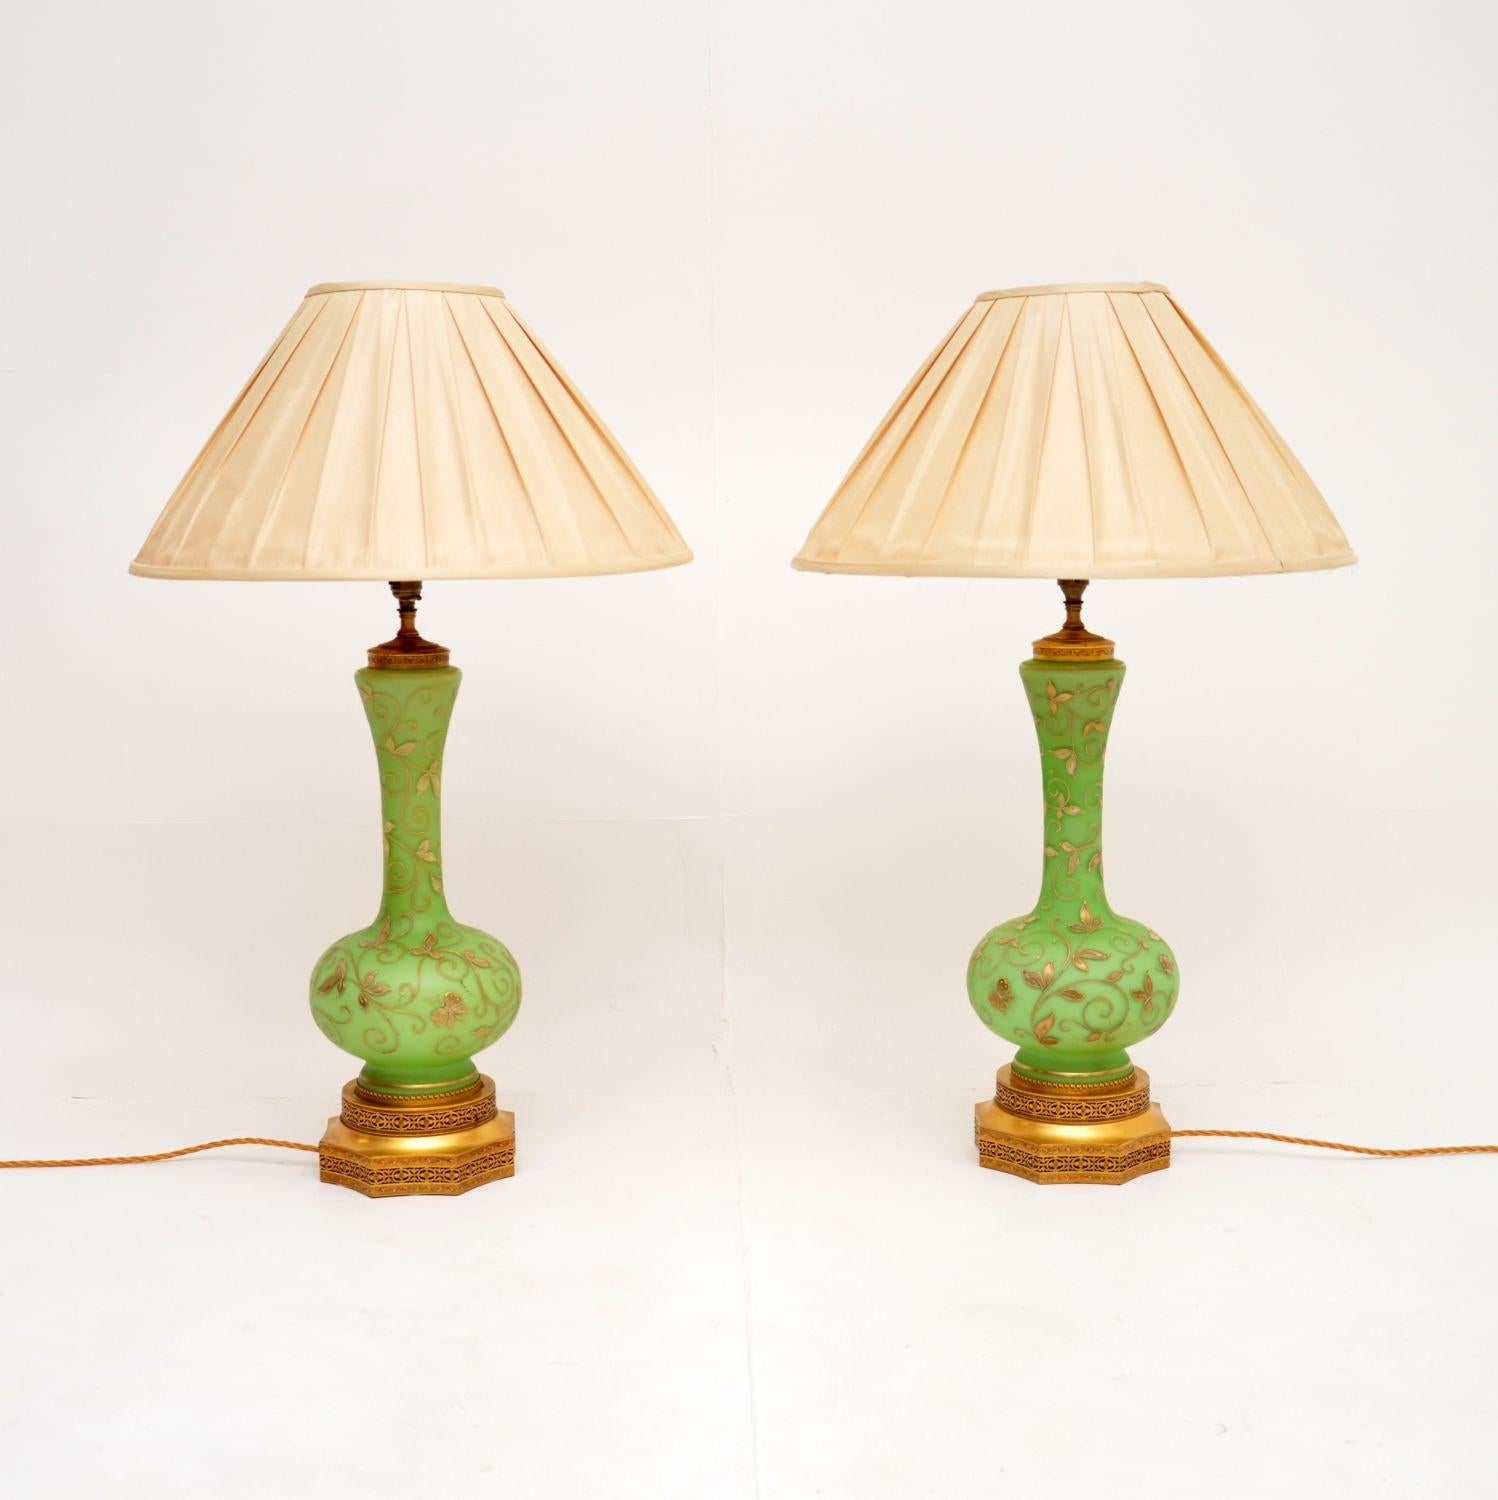 Une exquise paire de lampes de table antiques en verre et en métal doré, avec un superbe verre vert. Fabriqués en Angleterre, ils datent d'environ 1890-1900.

La qualité est exceptionnelle, le verre vert a la plus belle couleur et présente de